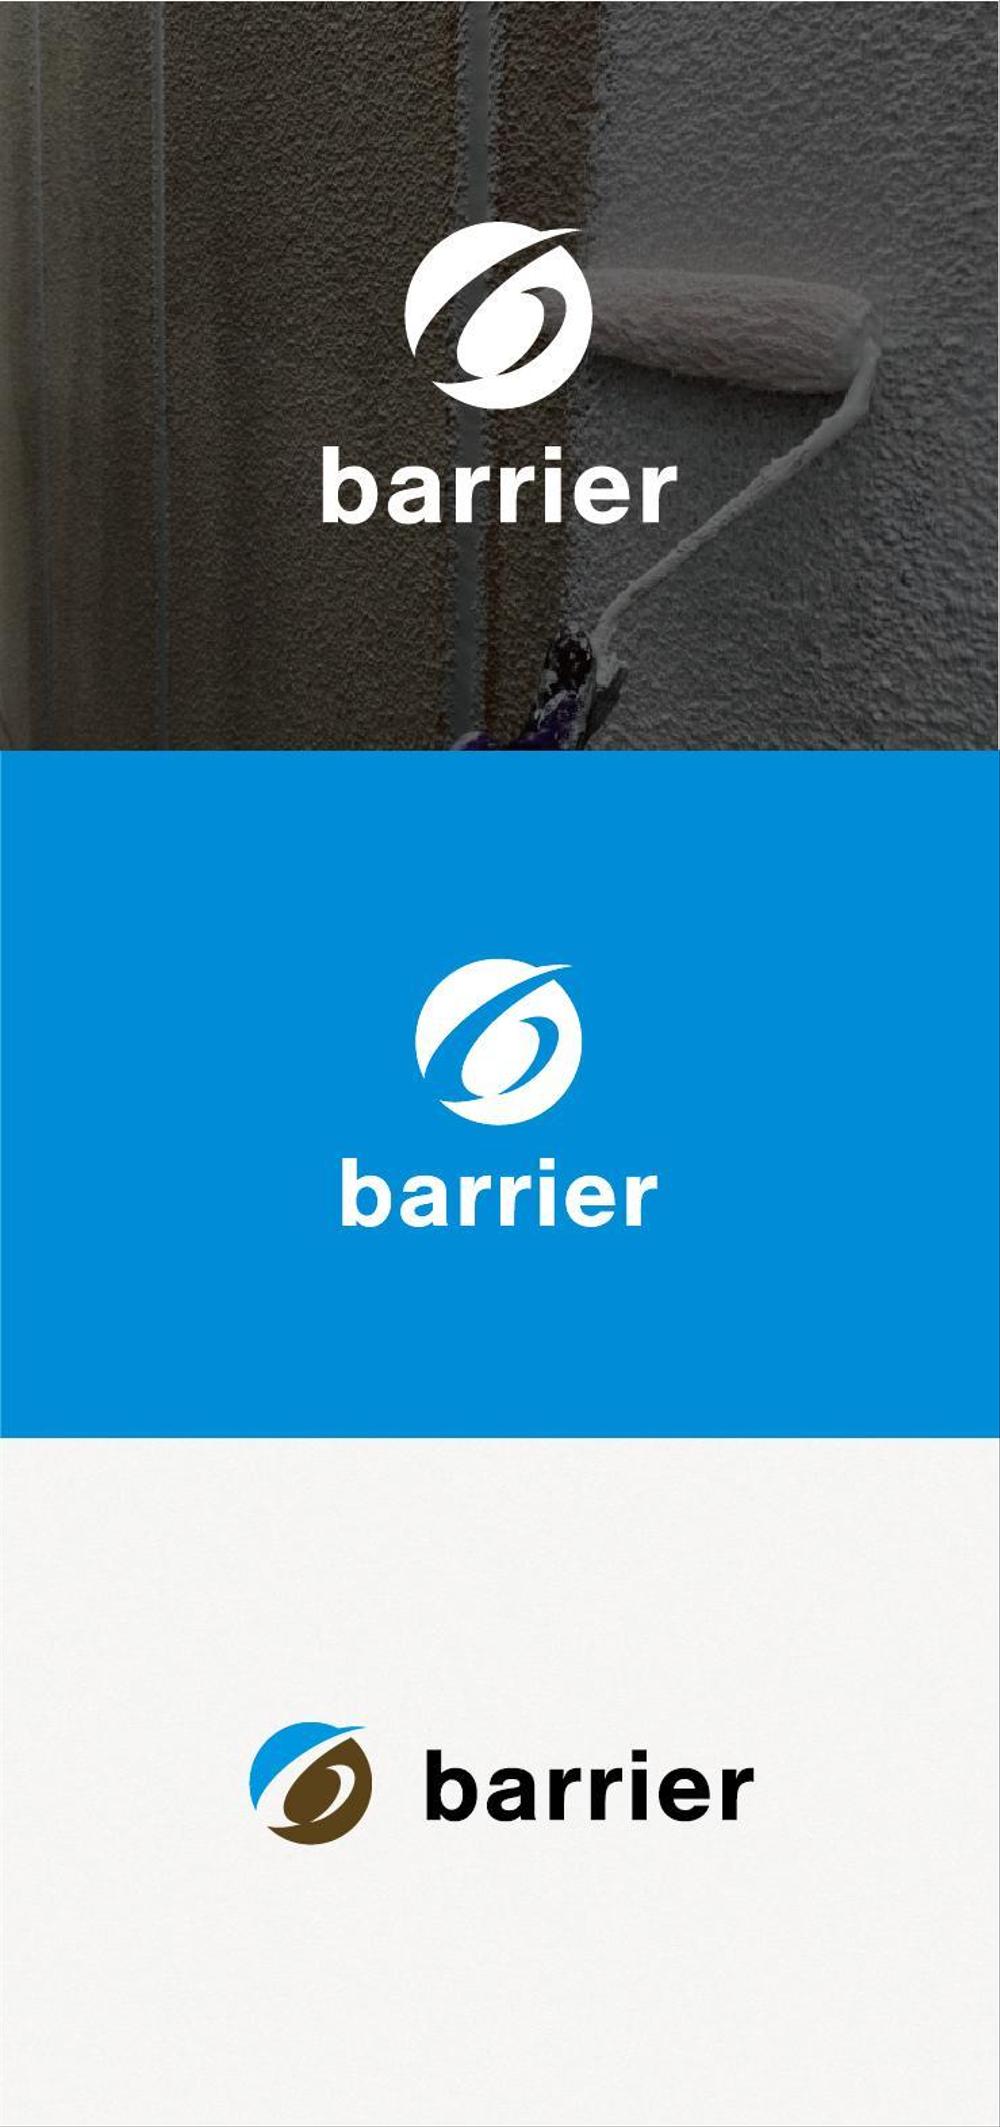 外壁塗装のシンボルマーク・ロゴタイプのデザイン依頼 株式会社barrier